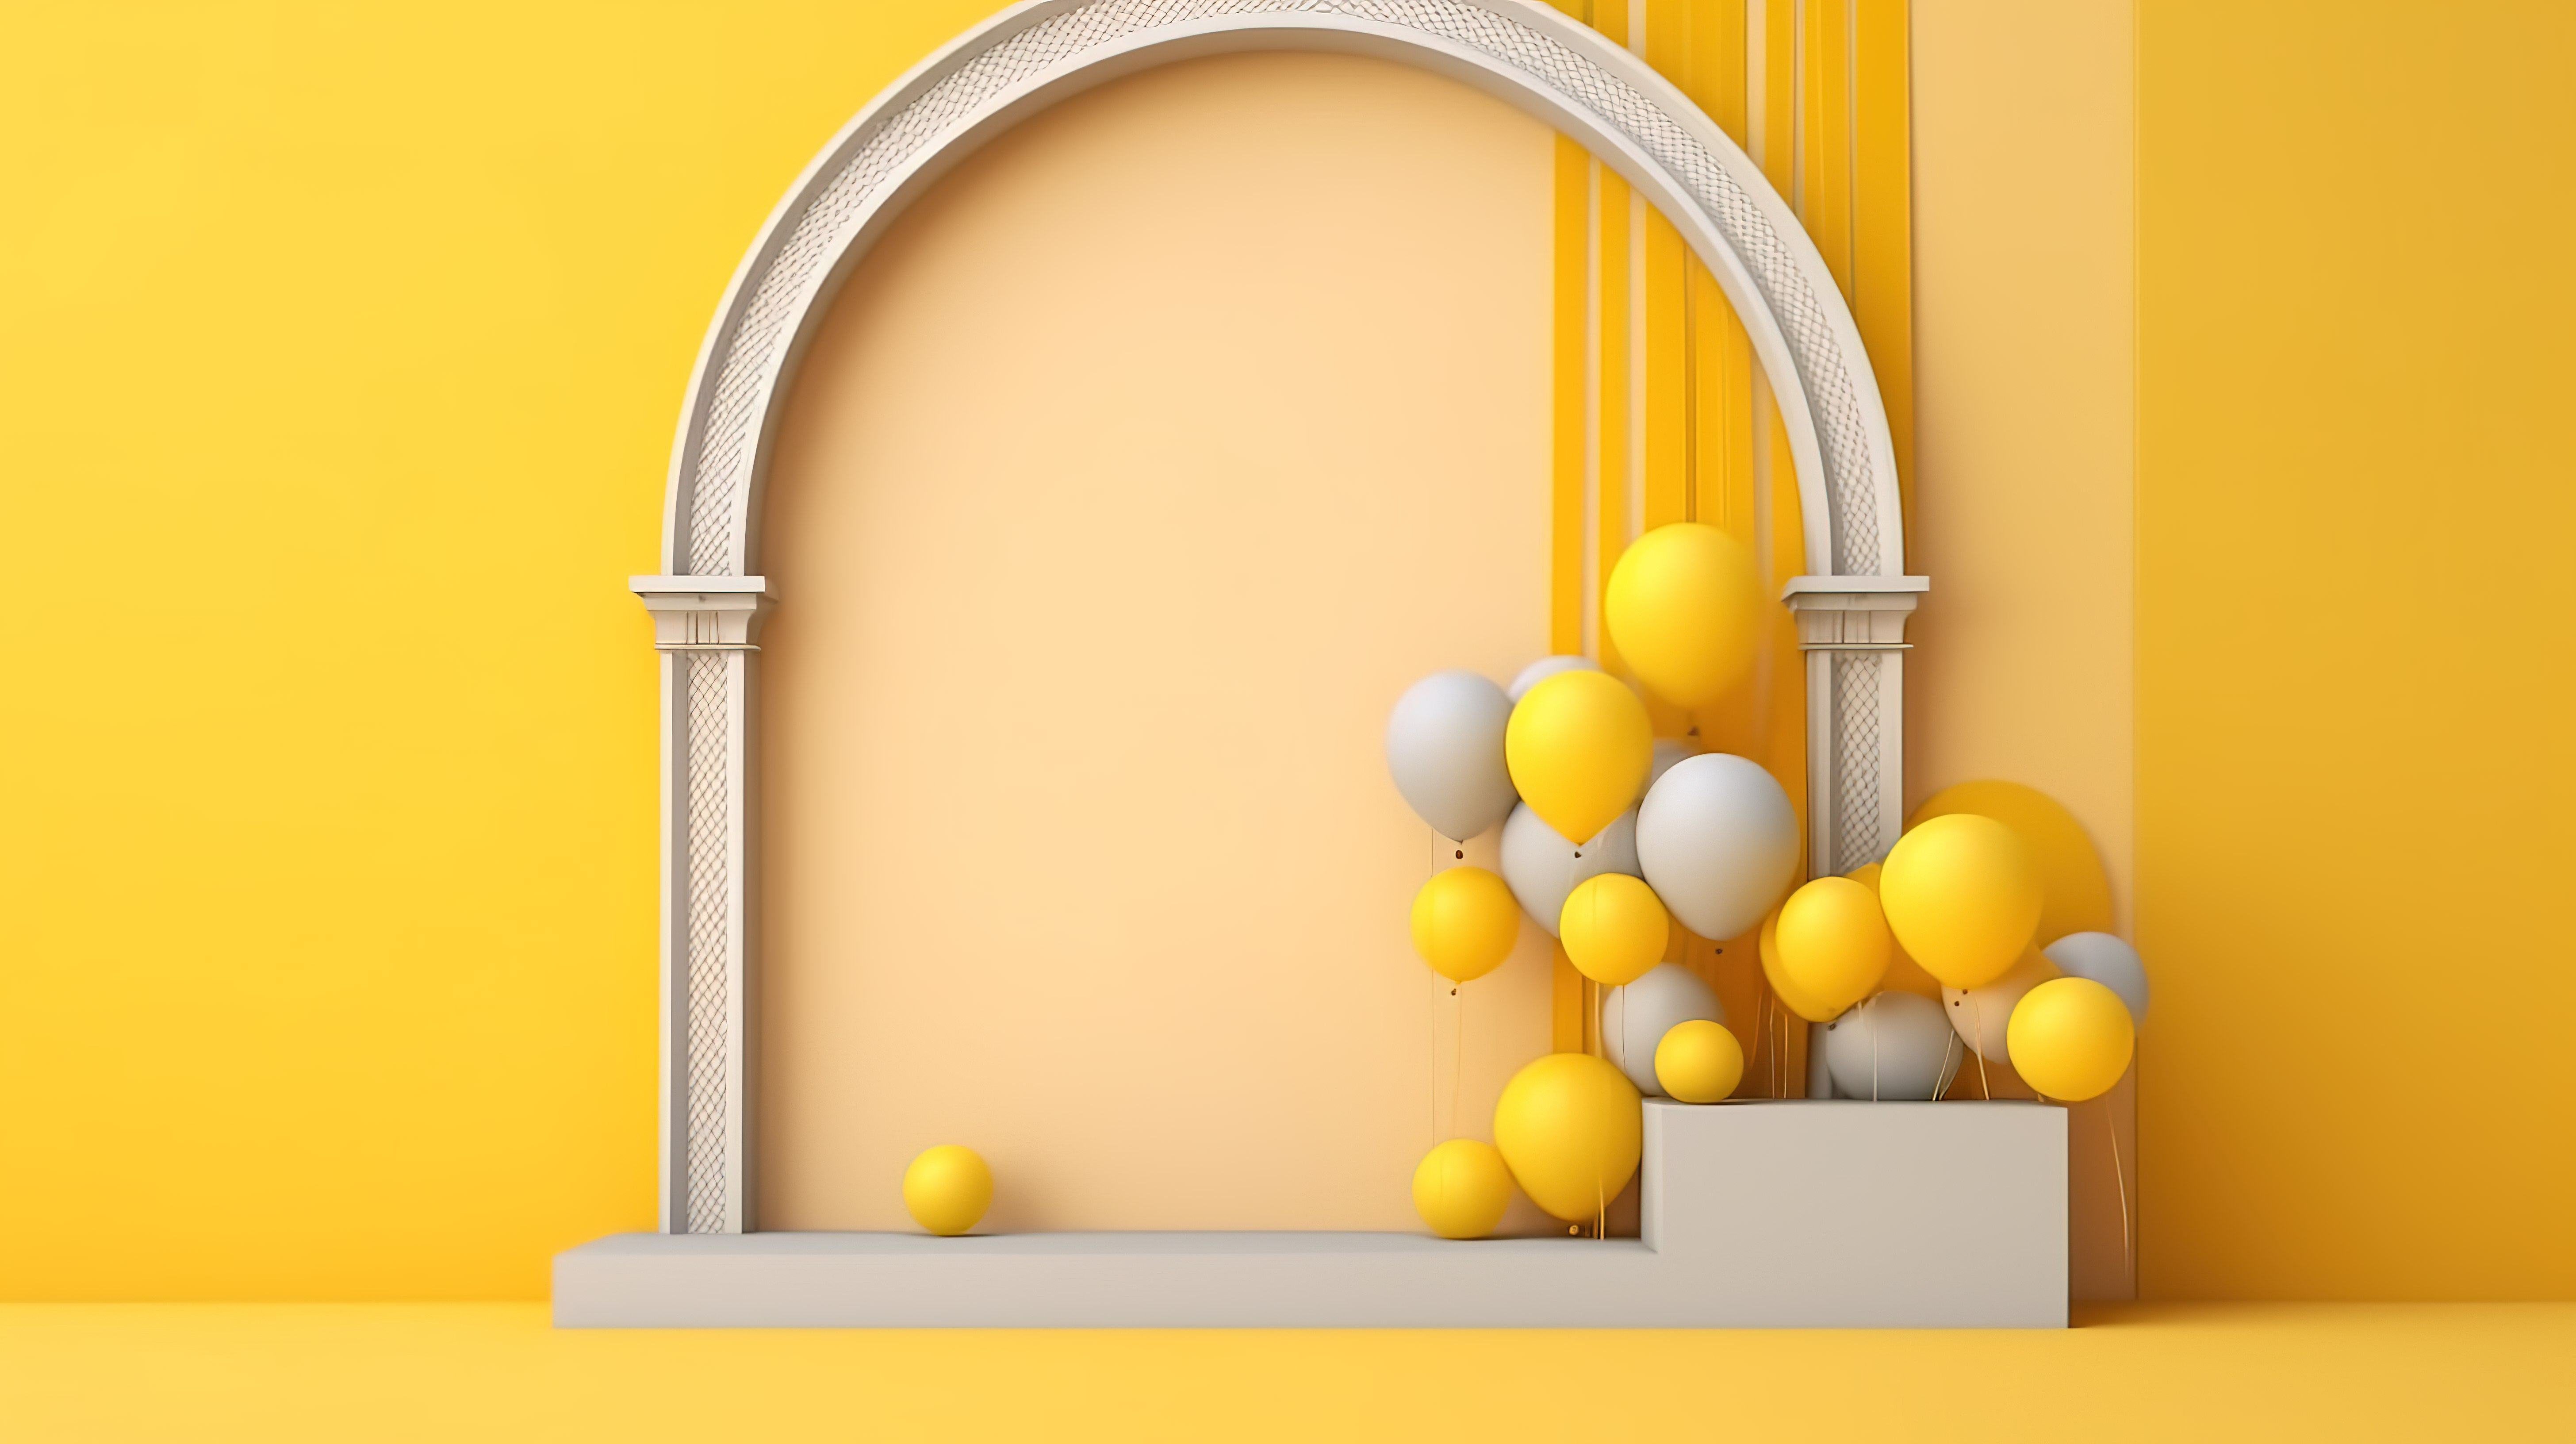 拱形窗户和悬浮气球在 3D 图形生成的黄色墙壁背景下的简单视图图片